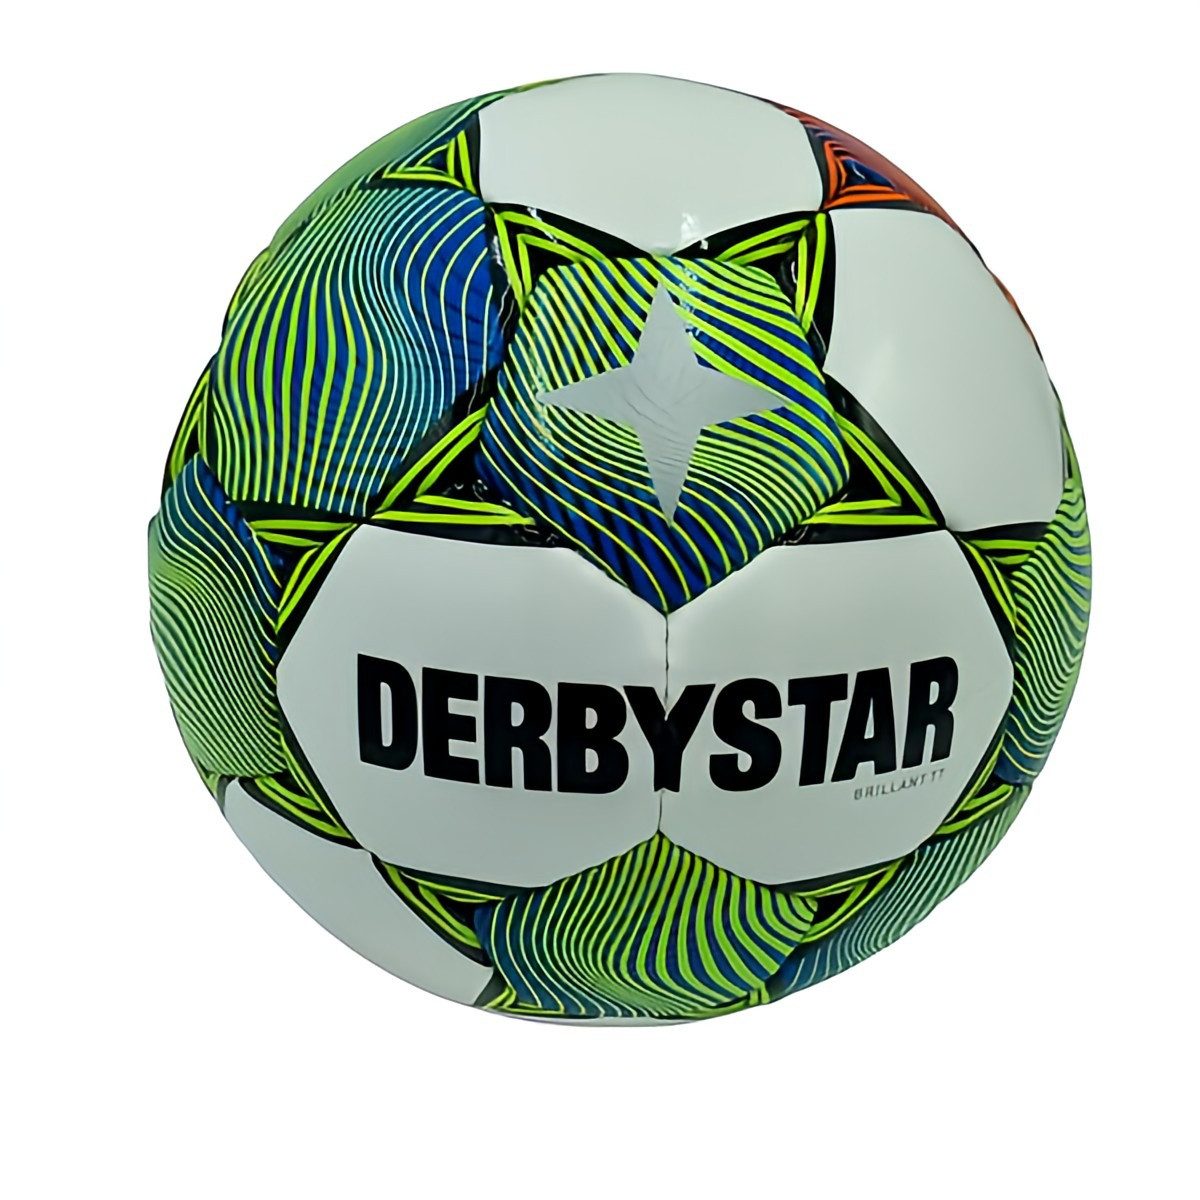 Derbystar Fußball Brillant TT v23 Trainingsball - Grösse 5